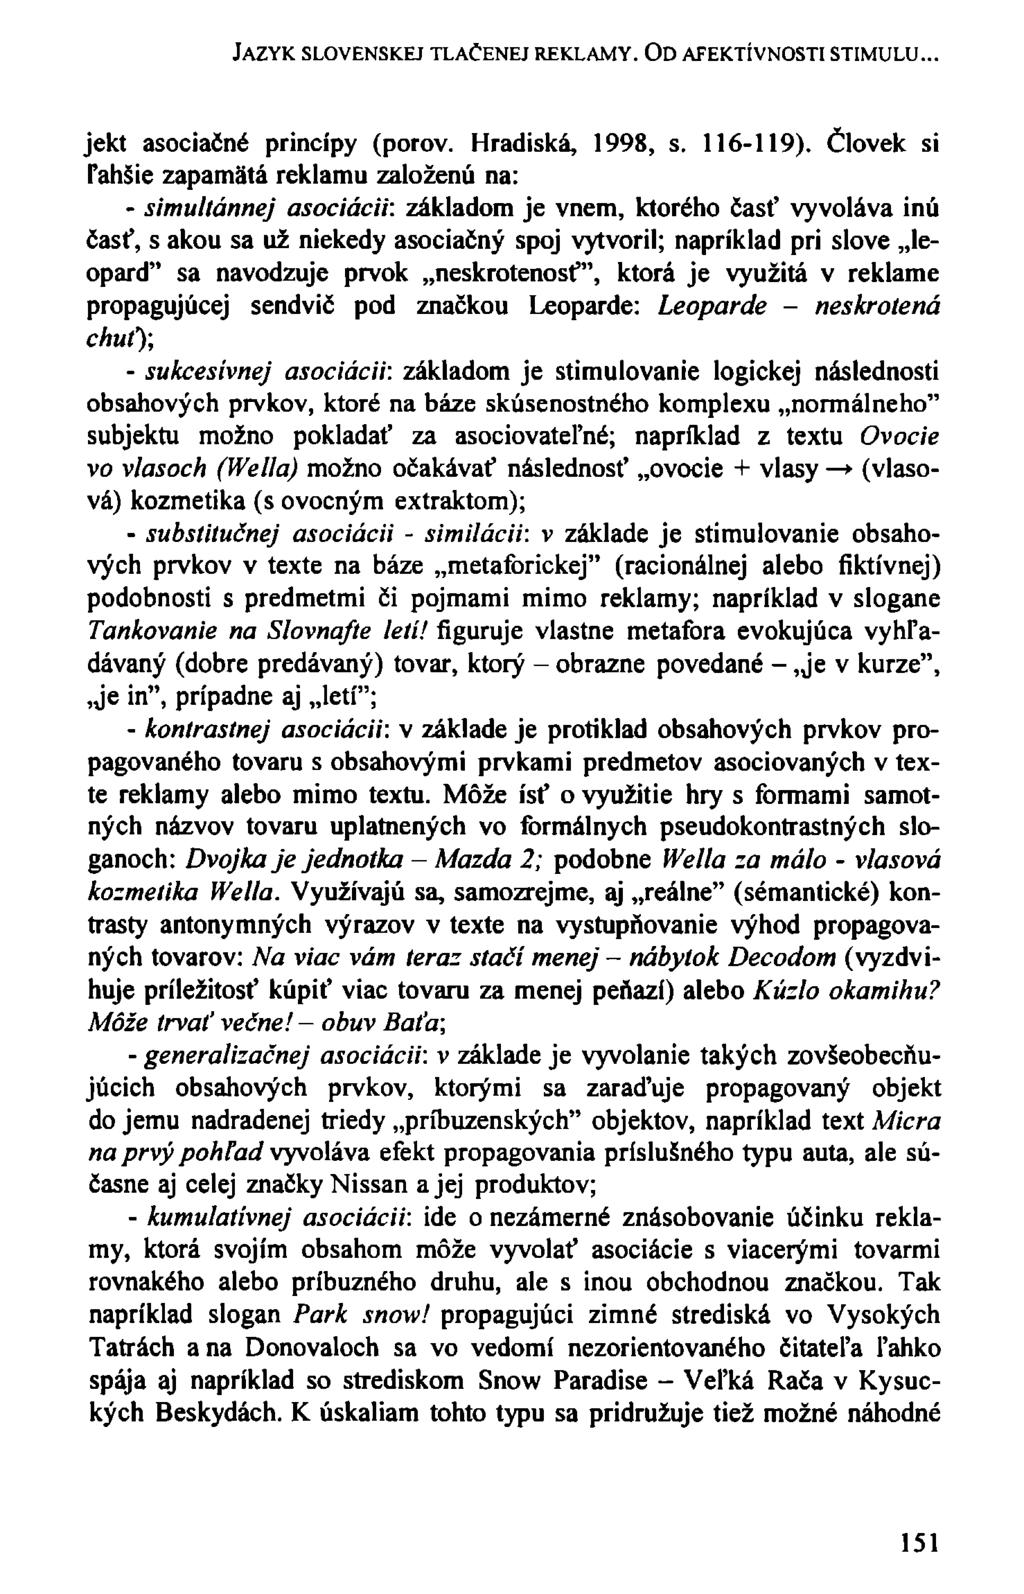 JAZYK SLOVENSKEJ TLAČENEJ REKLAMY. OD AFEKTÍVNOSTI STIMULU... jekt asociačné princípy (pórov. Hradiská, 1998, s. 116-119).